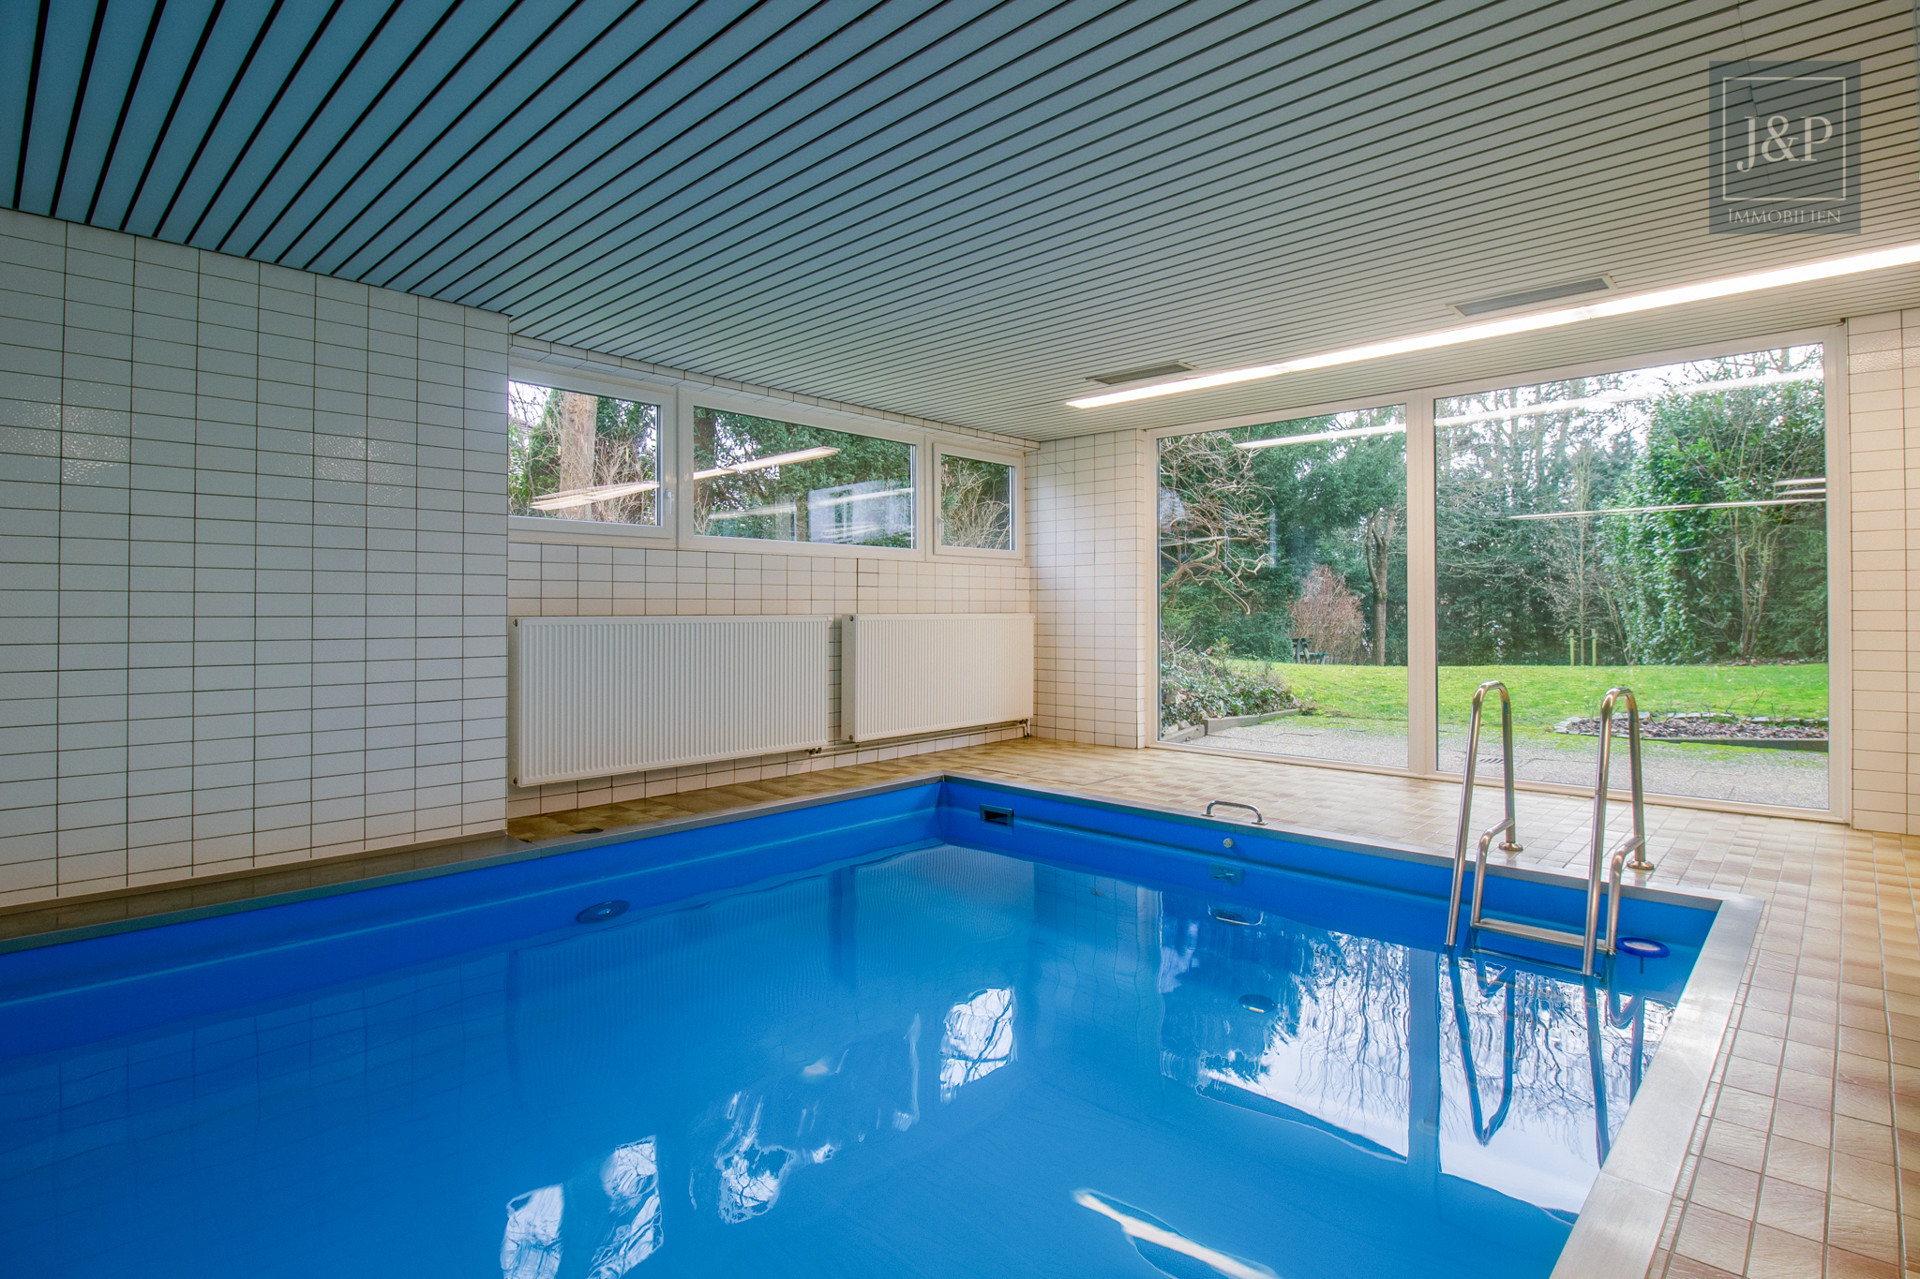 Reserviert! - Komplett sanierte Eigentumswohnung am Bad Homburger Kurpark mit Pool, Sauna & gepflegten Gartenbereich - Poolbereich